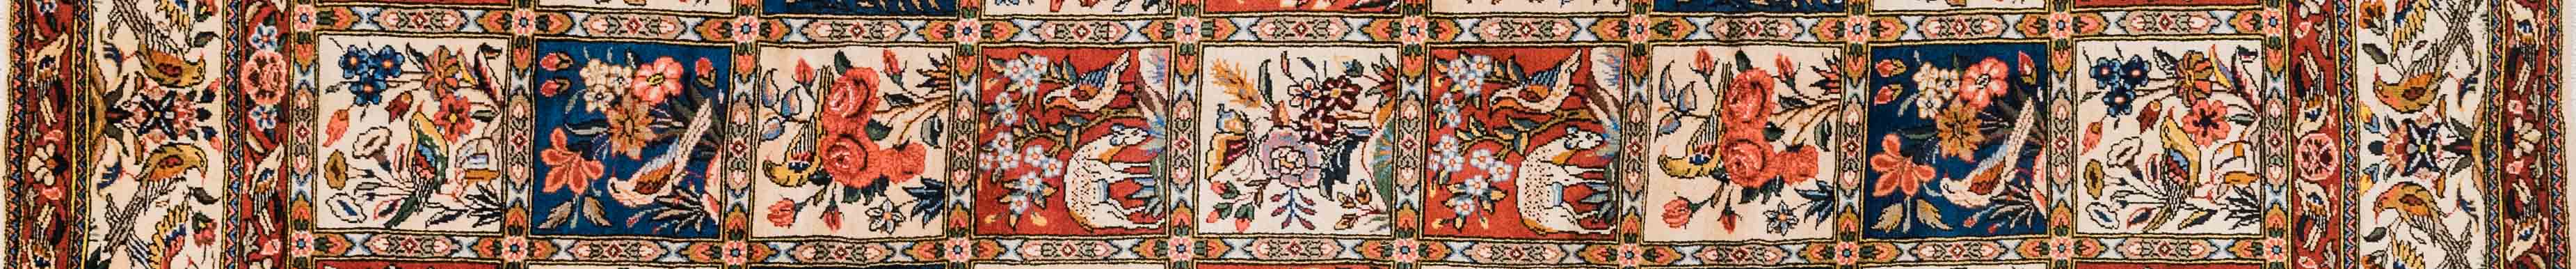 Bakhtiar Persian Carpet Rug N1Carpet Canada Montreal Tapis Persan 3200